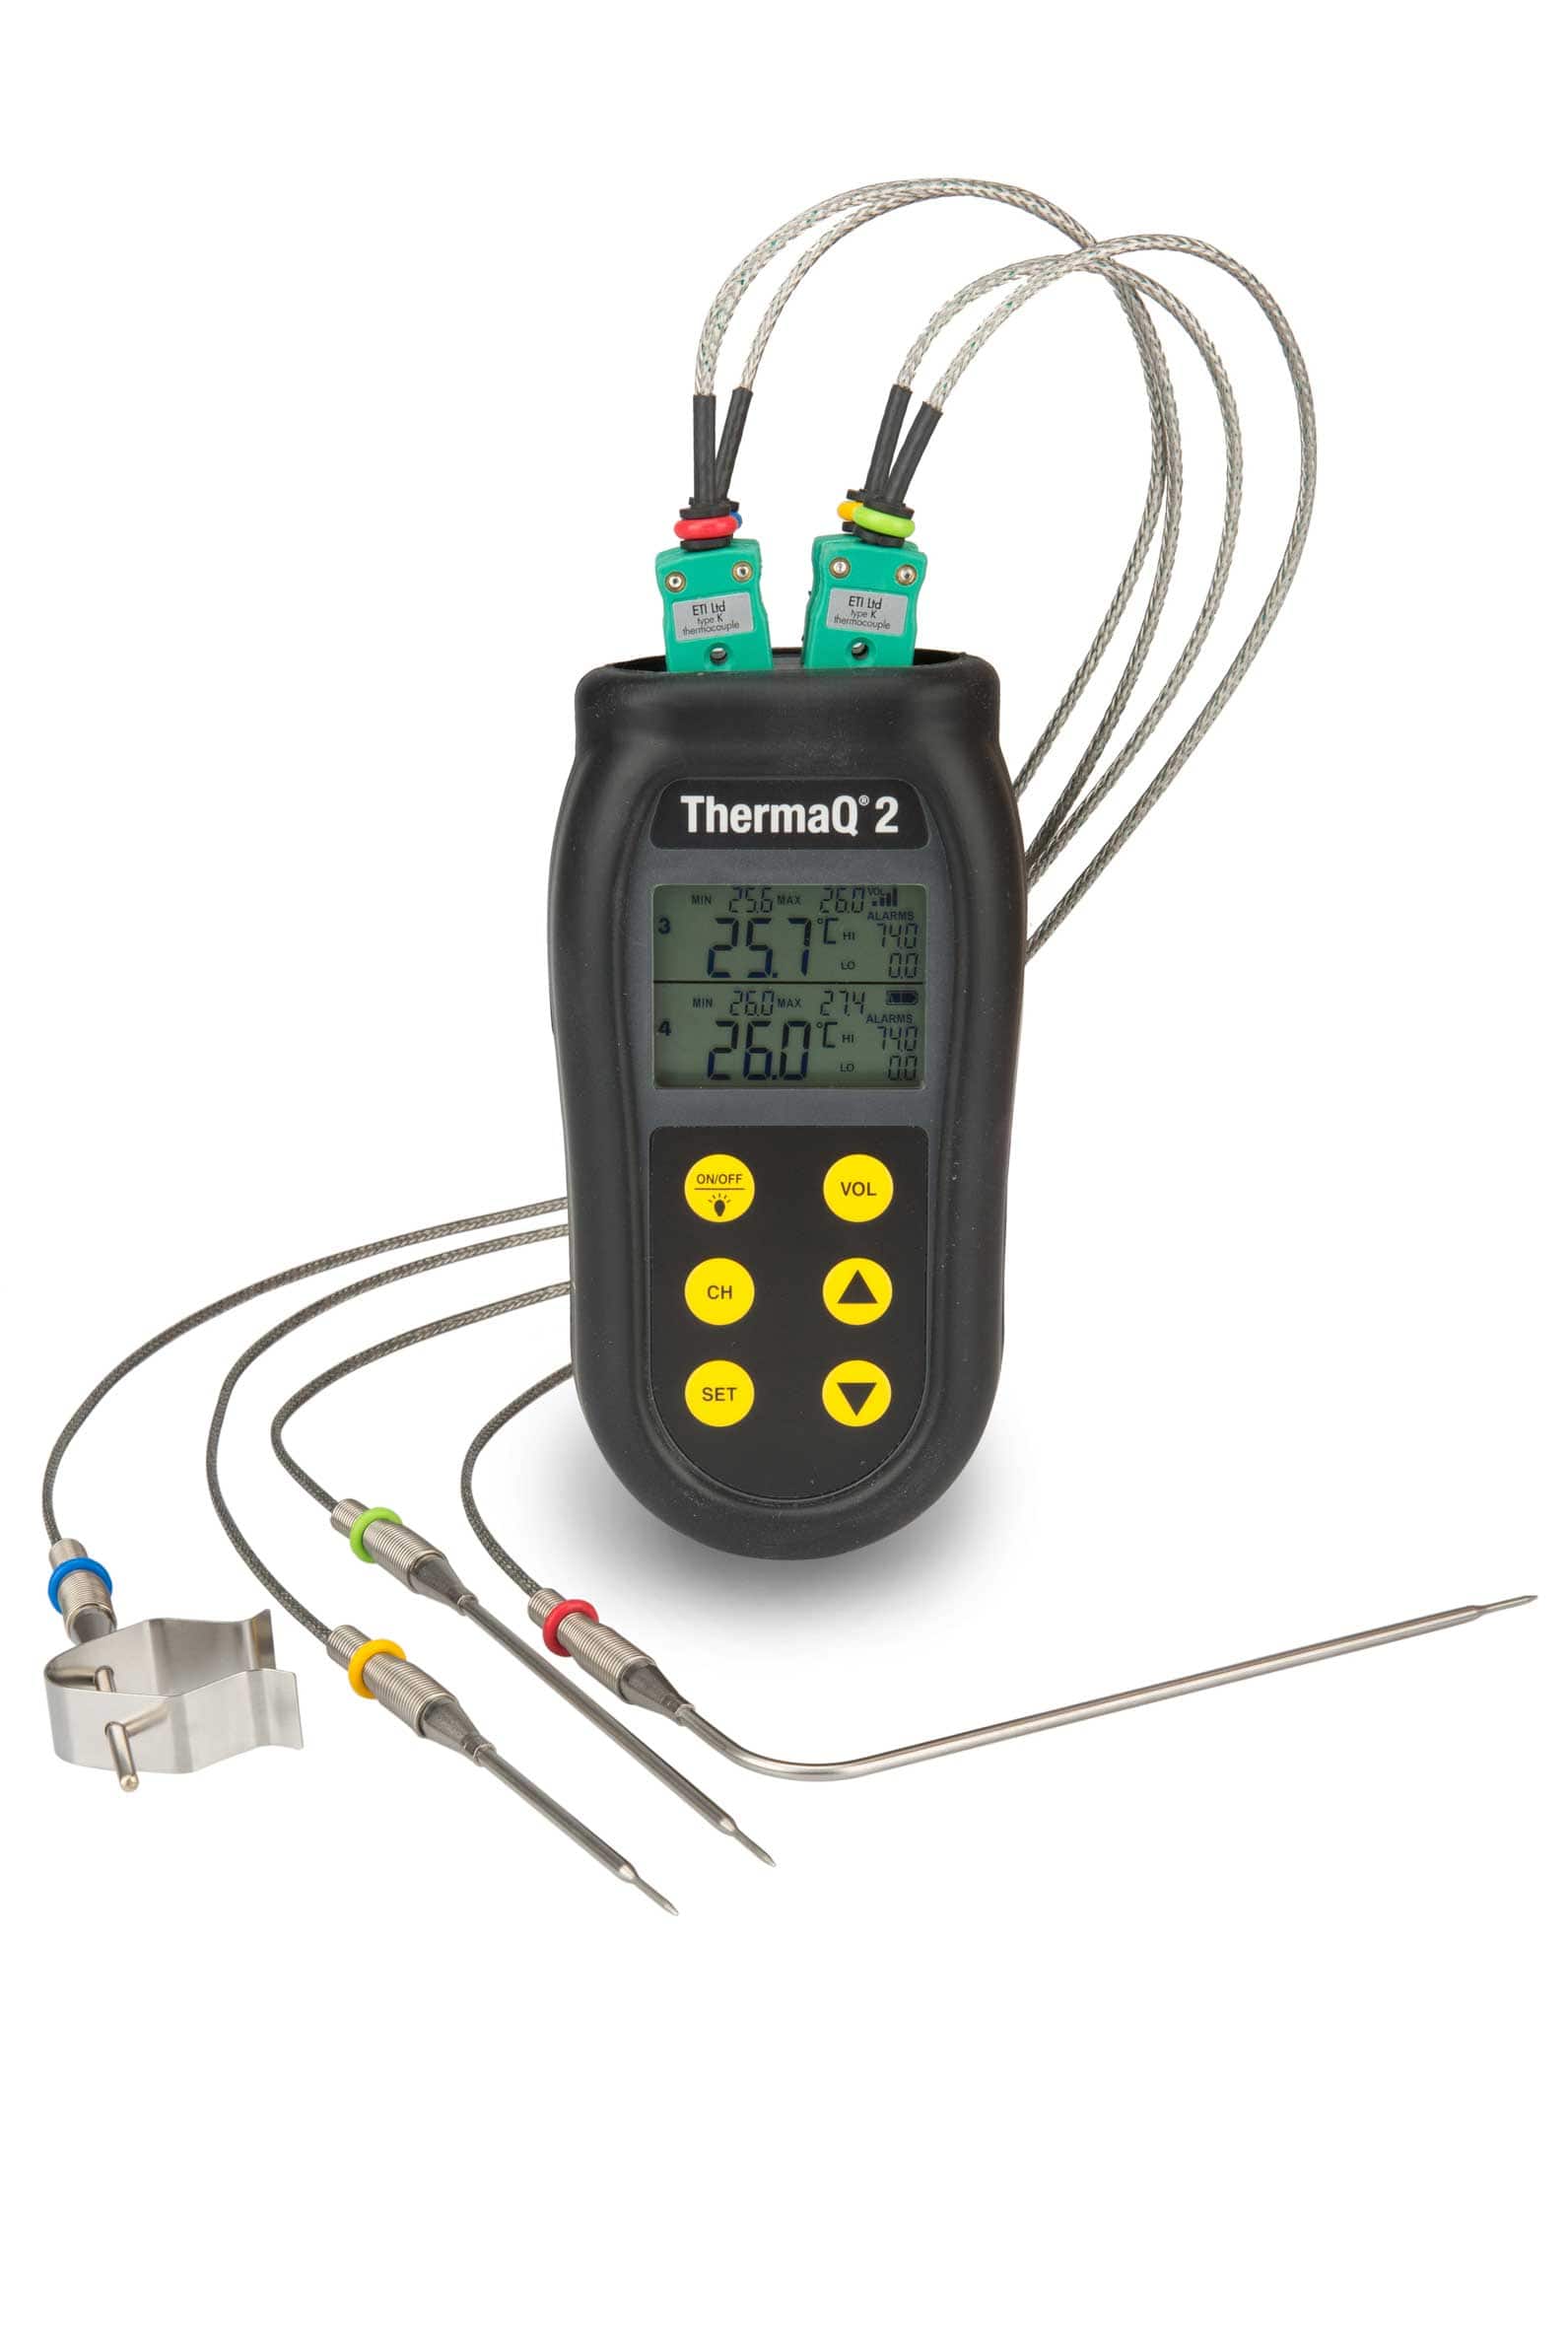 Thermomètres et minuteurs : kit thermometre connecte